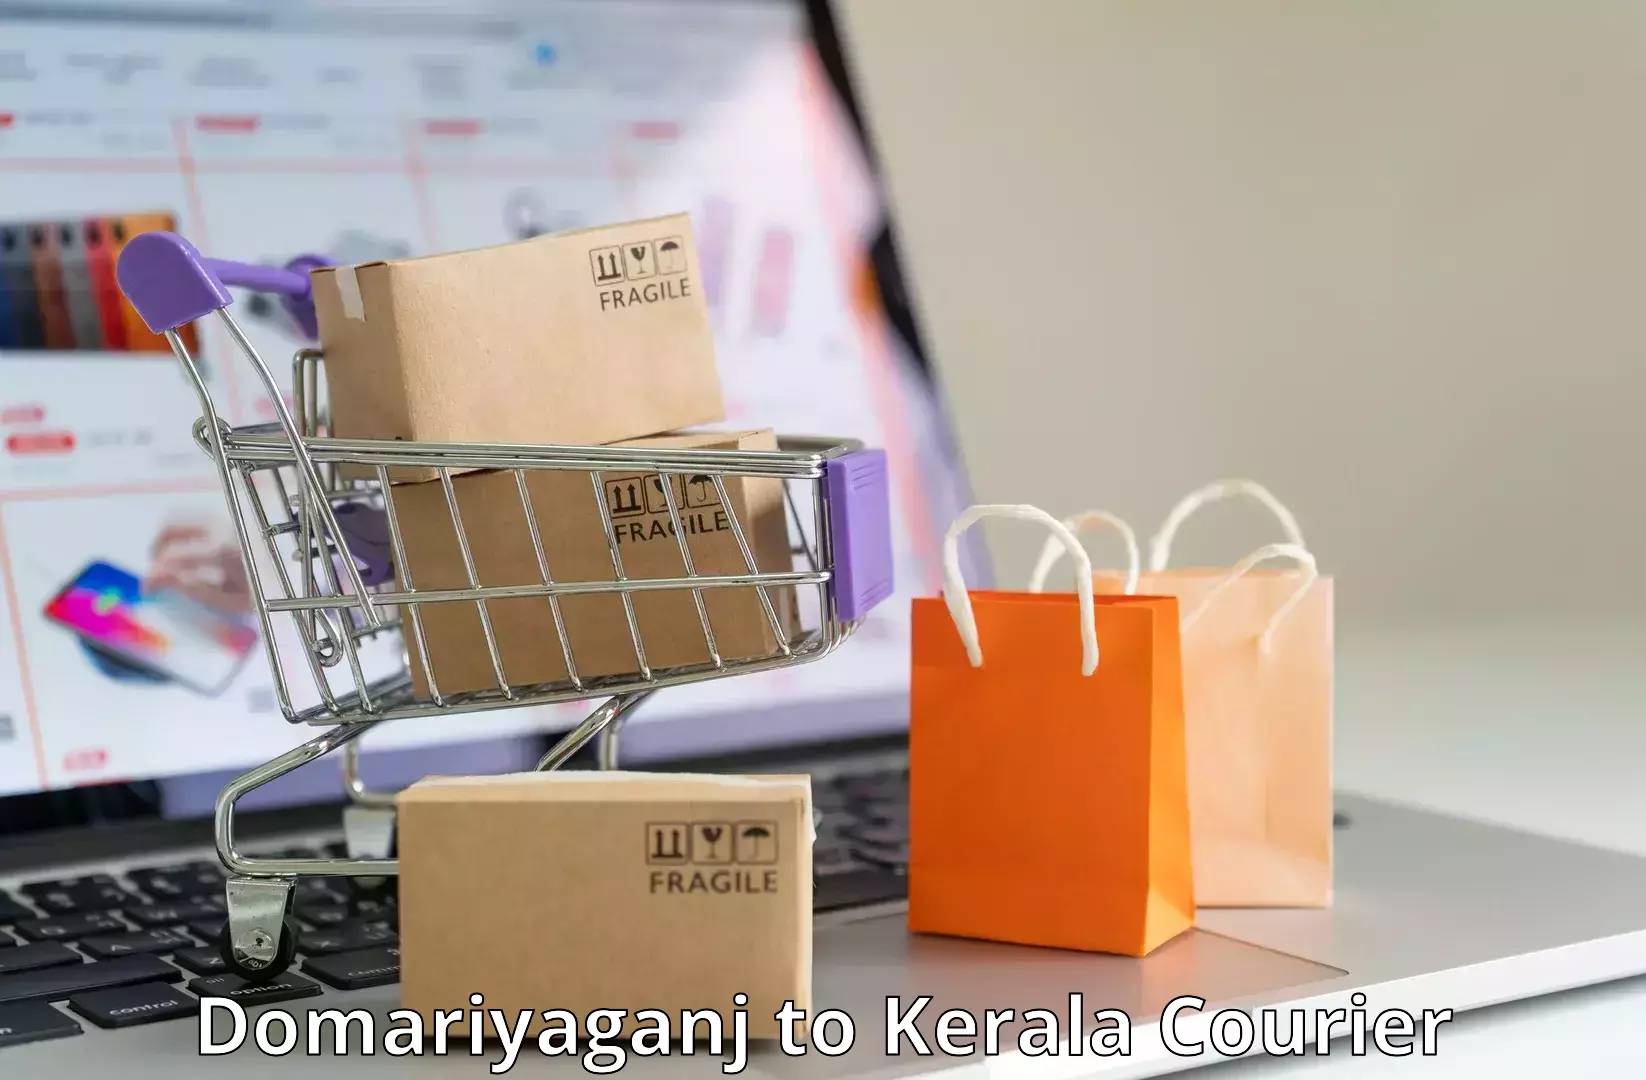 Express mail solutions Domariyaganj to Kerala